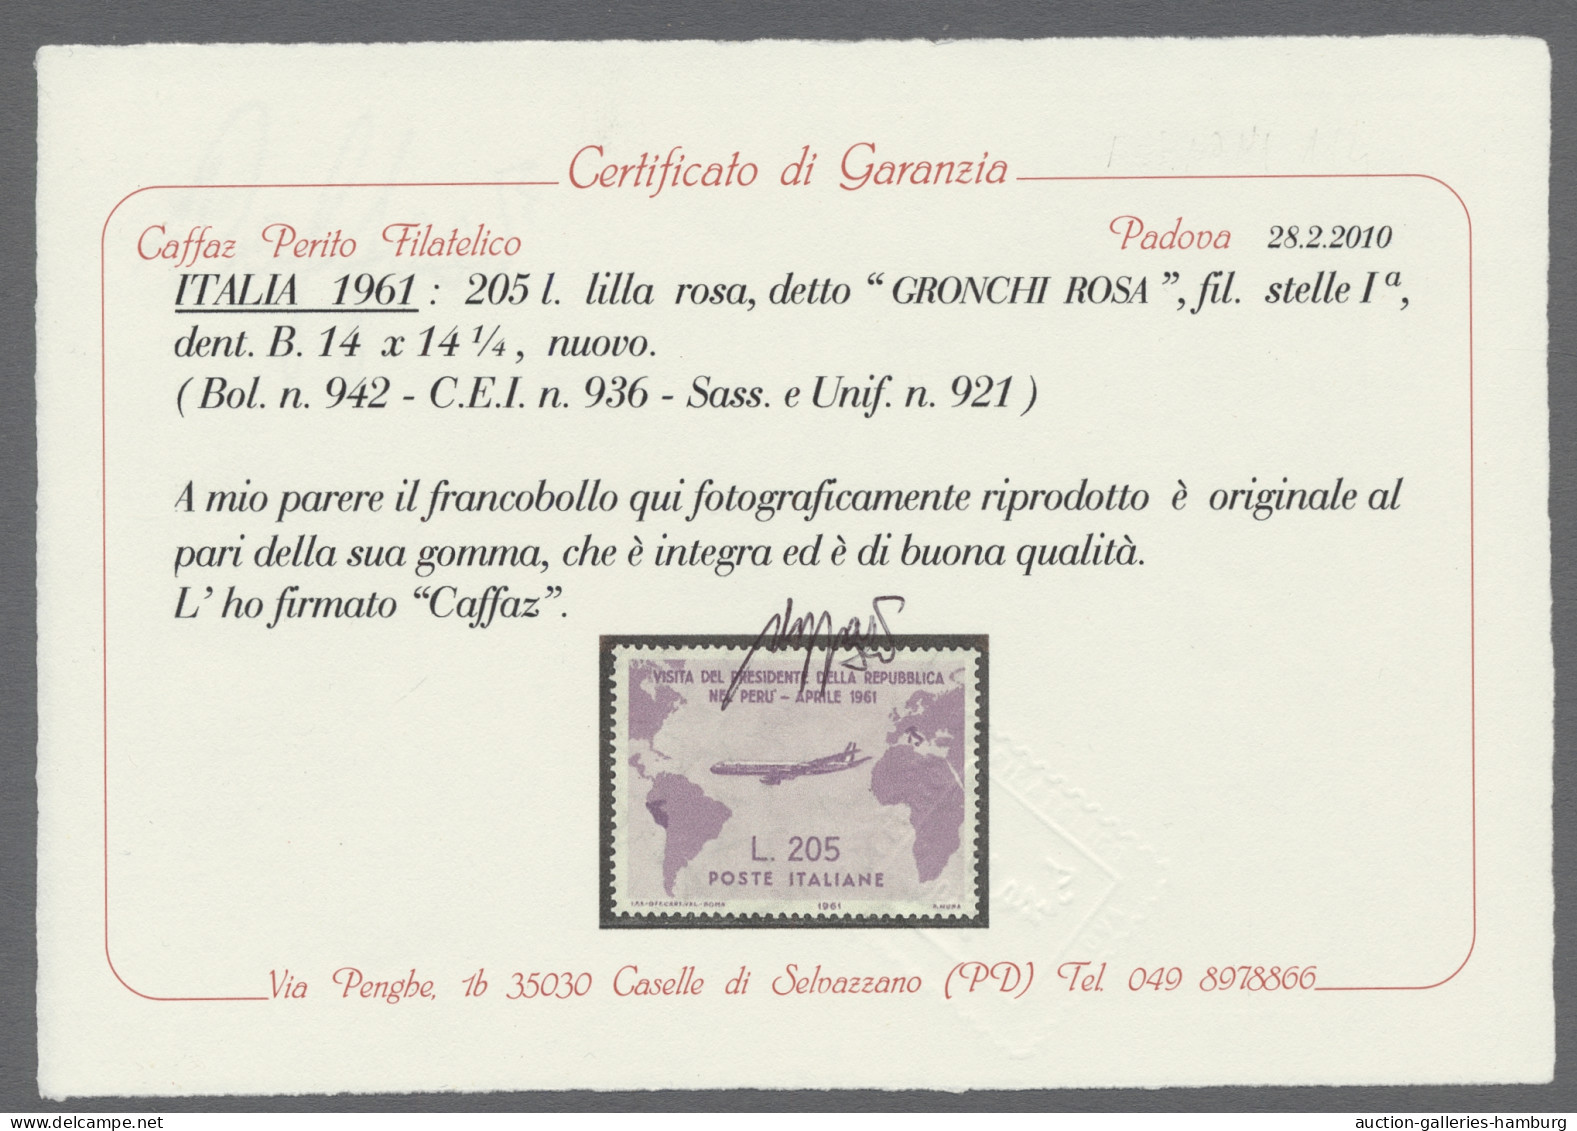 ** Nachlässe: ITALIEN, 1945-1990, Komplette postfrische Sammlung in zwei Vordruckal